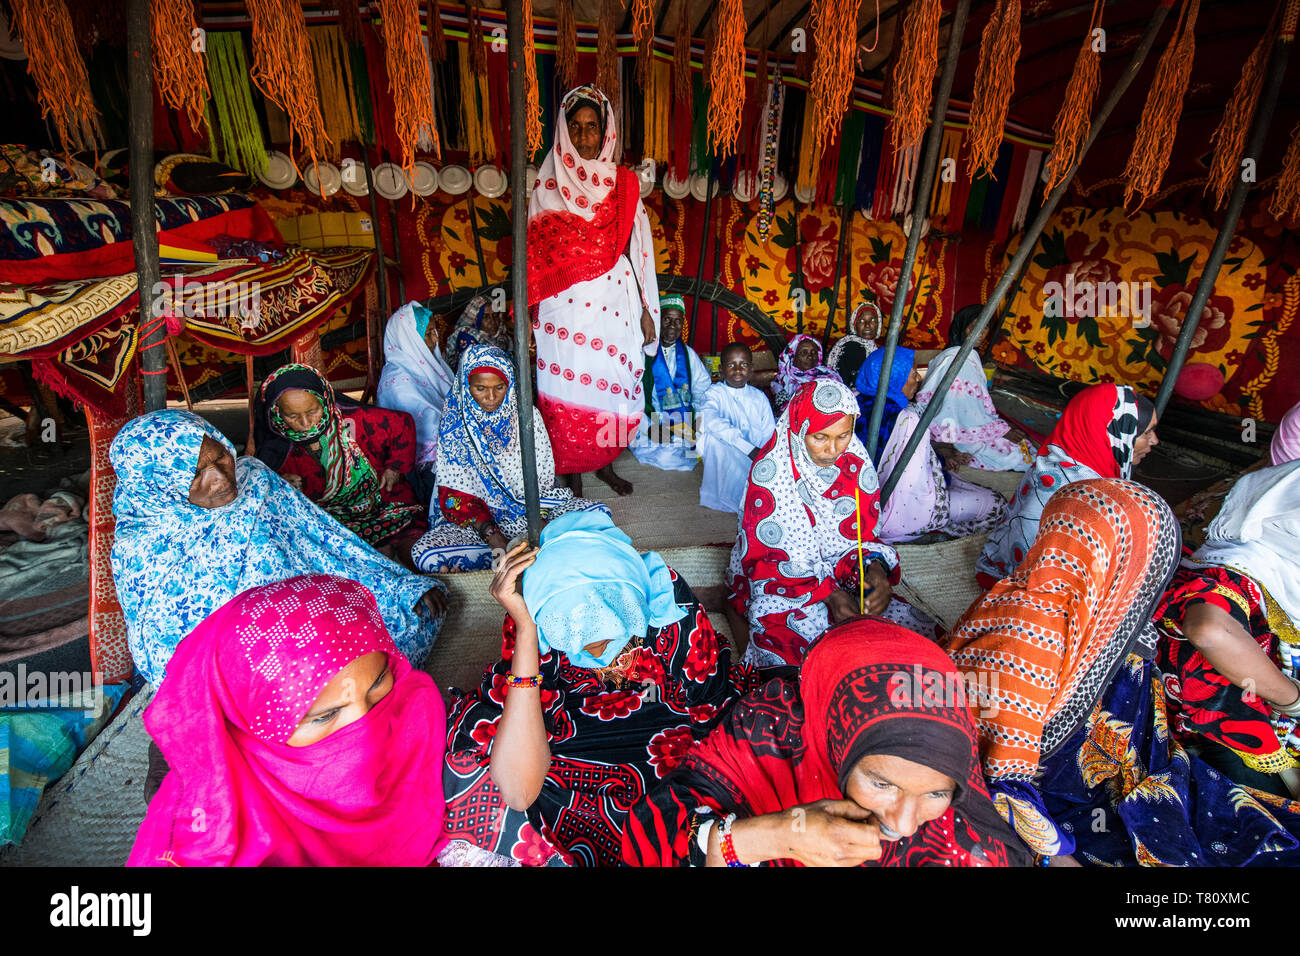 Les femmes Toubou habillé très coloré, tribal festival, Place de la Nation, N'Djamena, Tchad, Afrique Banque D'Images